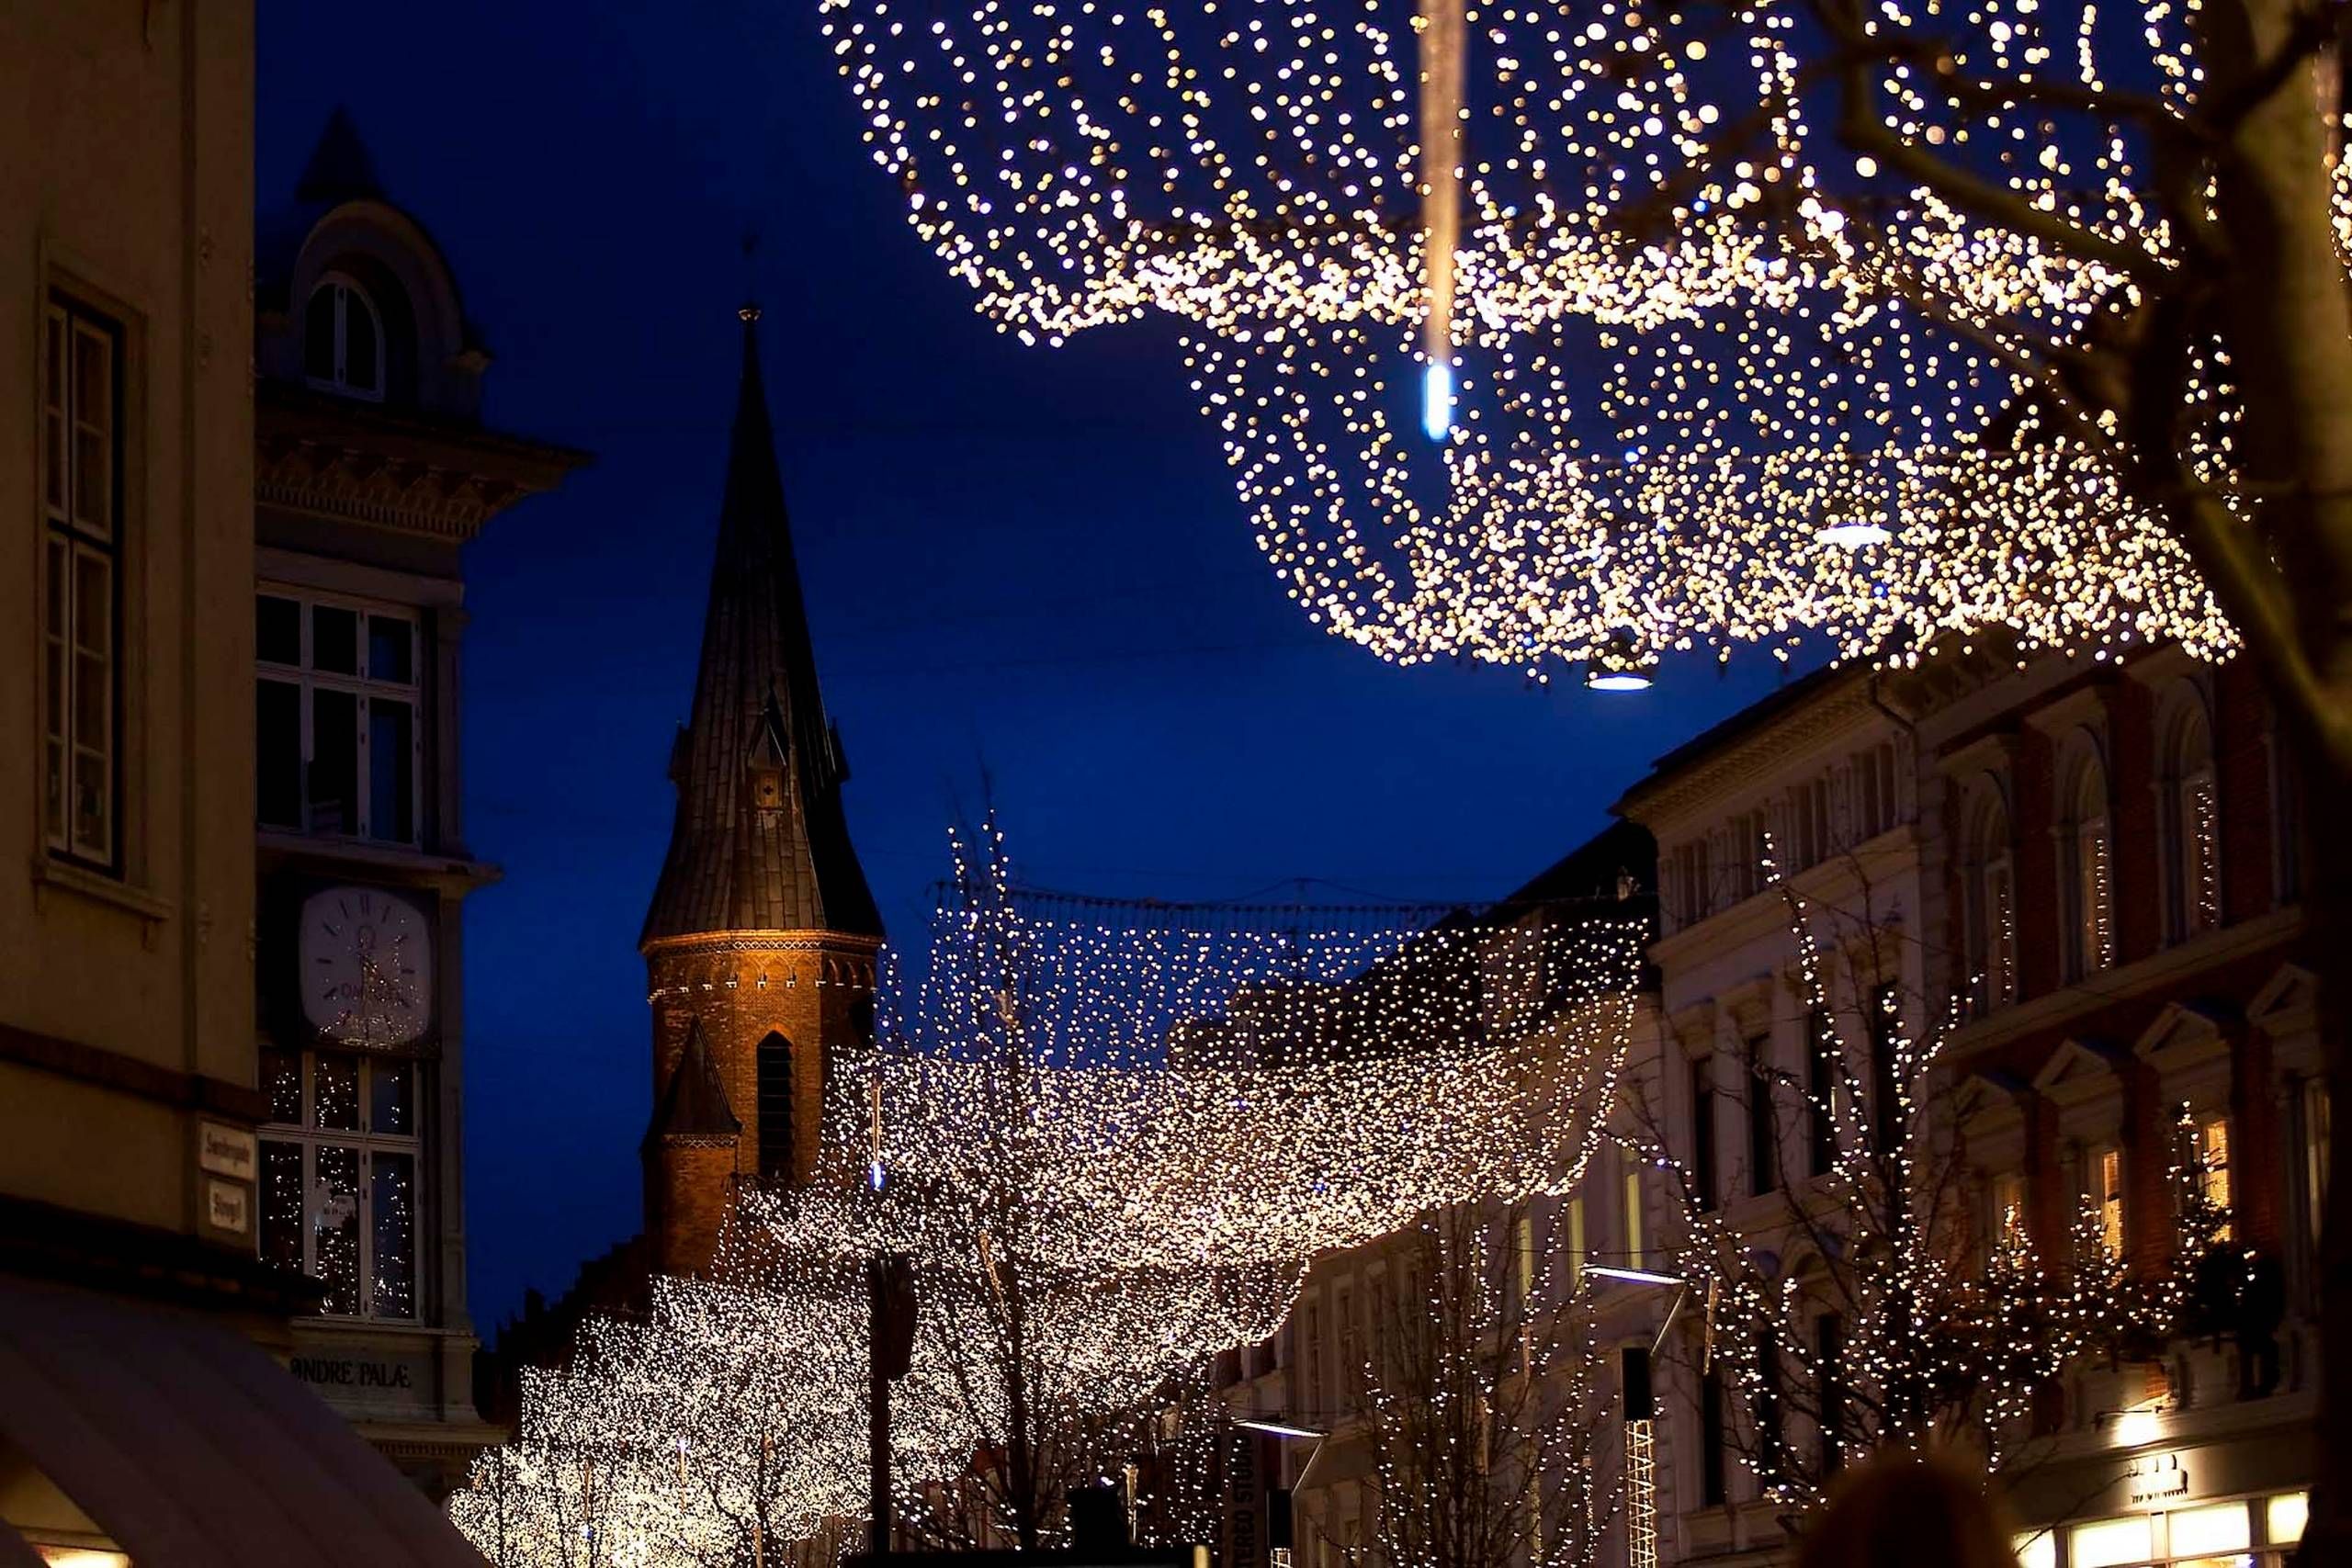 Ib roman akademisk "Tag" af julelys over Aarhus blev tændt